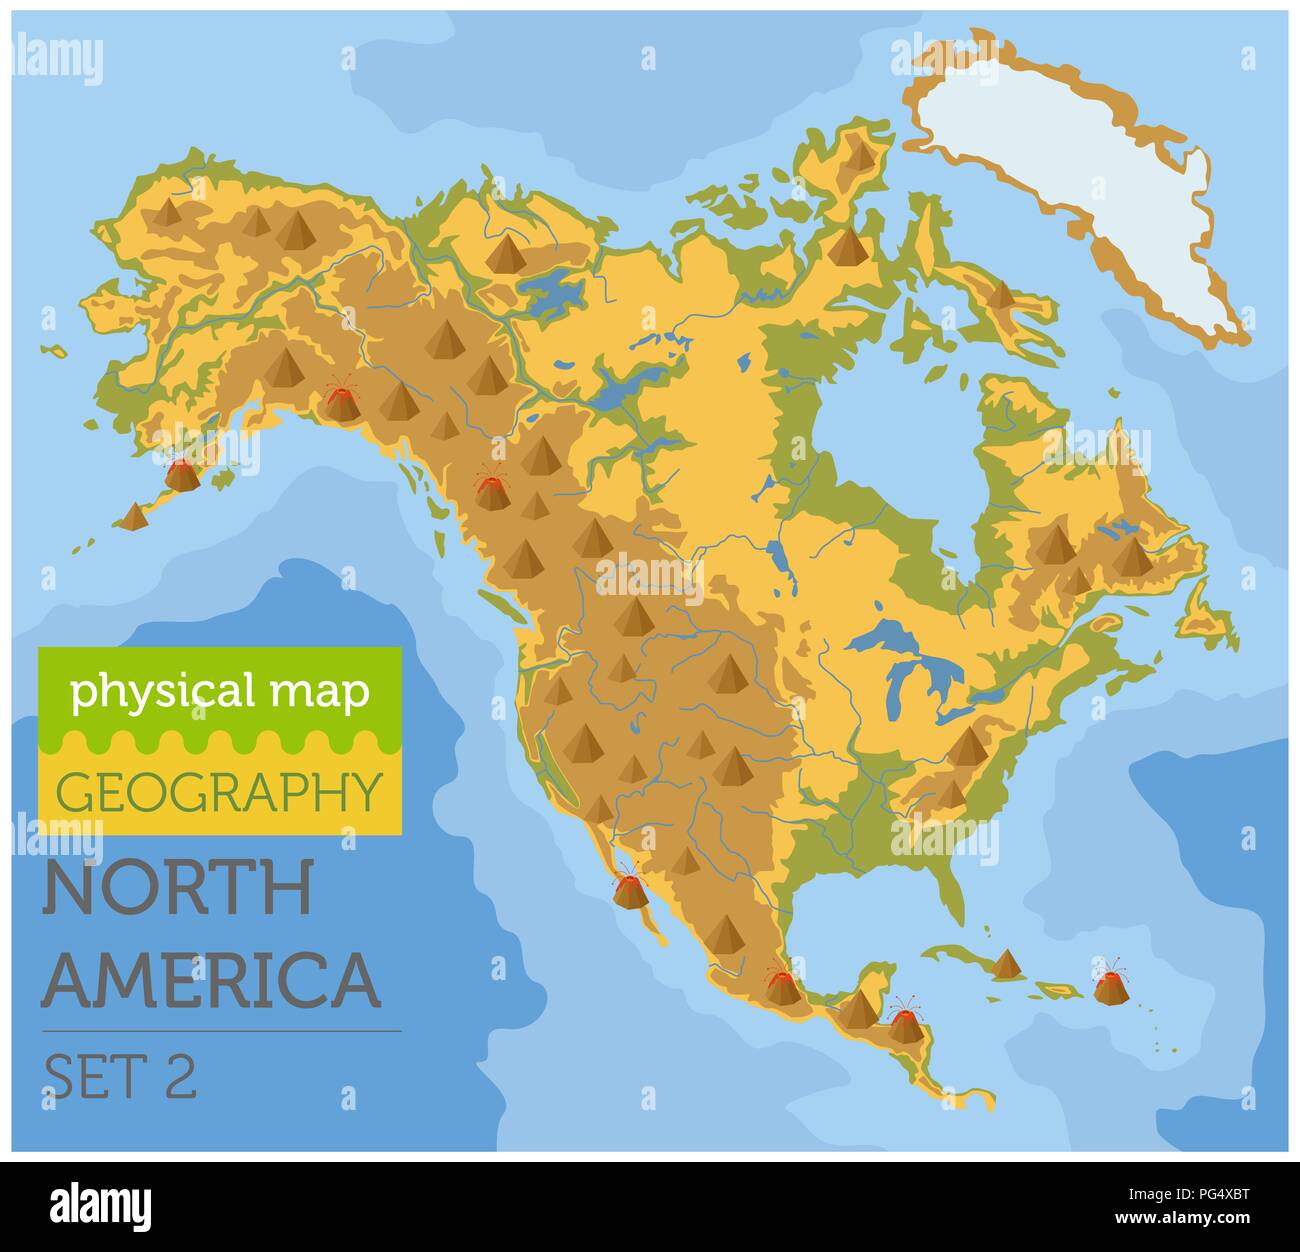 Nordamerika physische Karte Elemente. Ihre eigene Geographie info Graphische Sammlung aufzubauen. Vector Illustration Stock Vektor